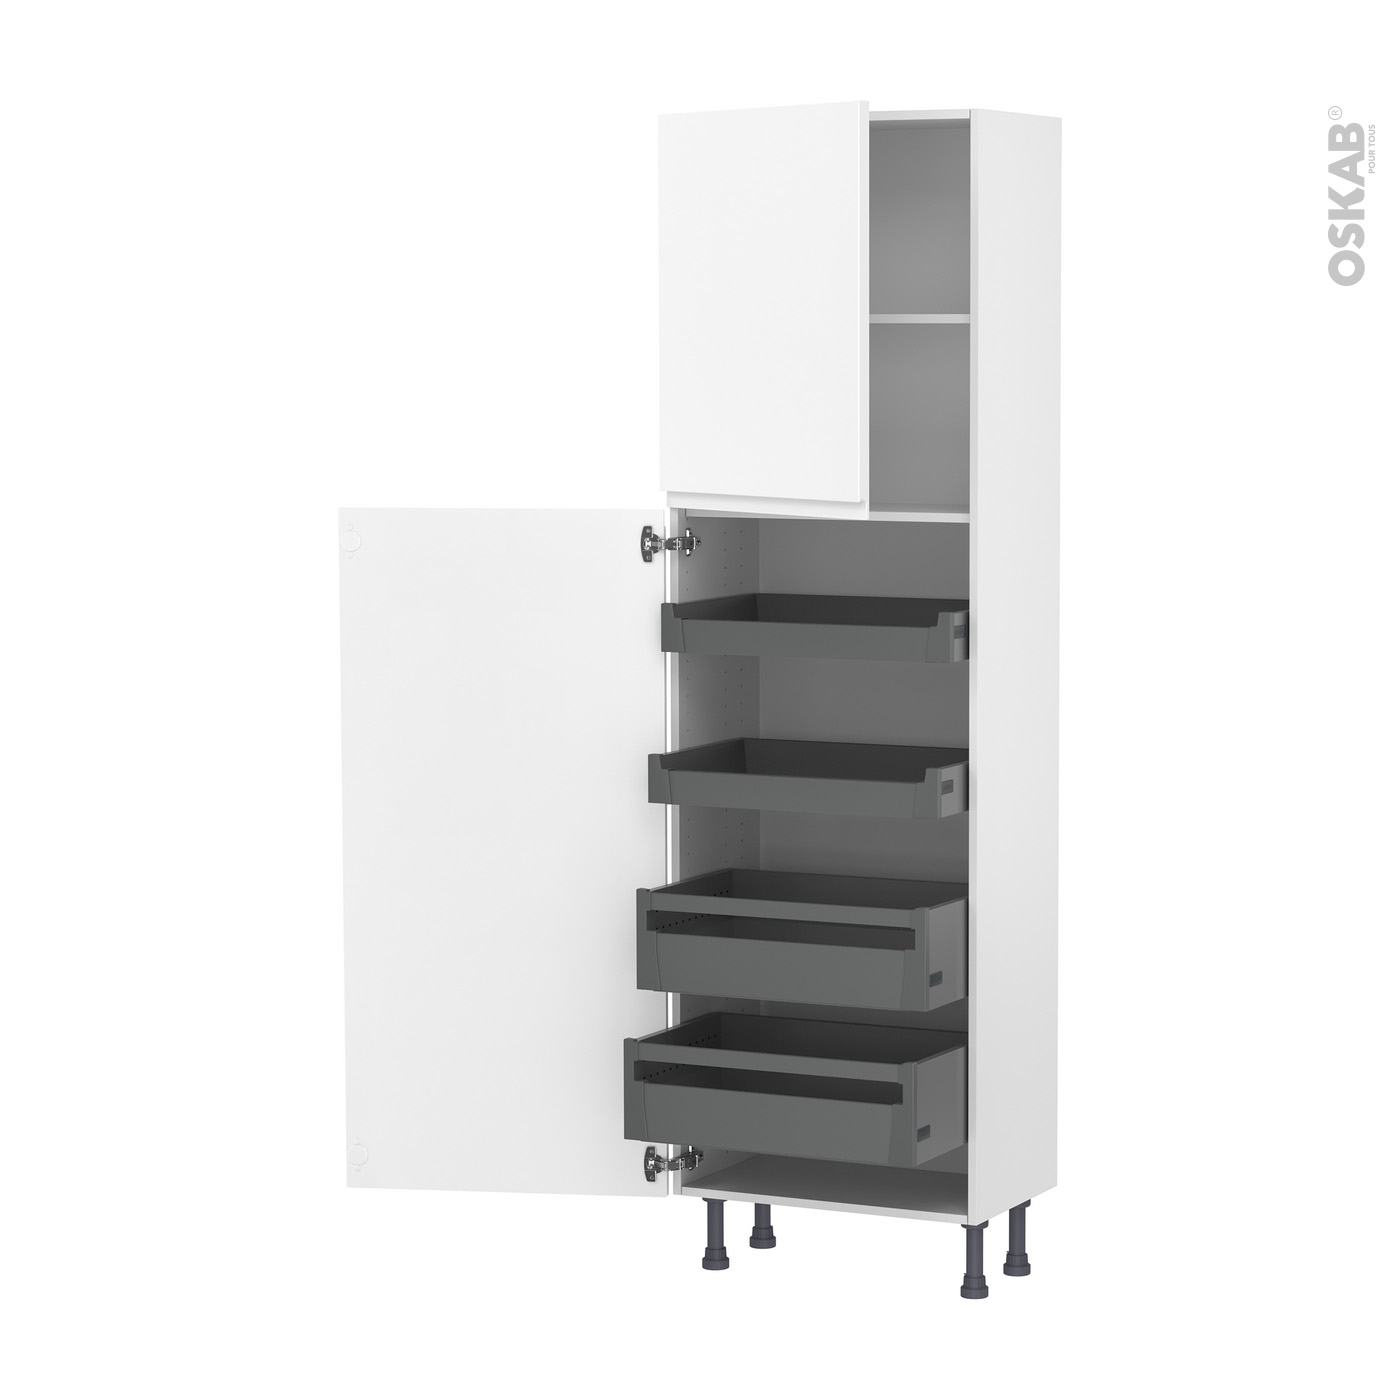 Colonne de cuisine N°2721 Armoire frigo encastrable IPOMA Noir mat 2 portes  L60 x H195 x P58 cm - Oskab